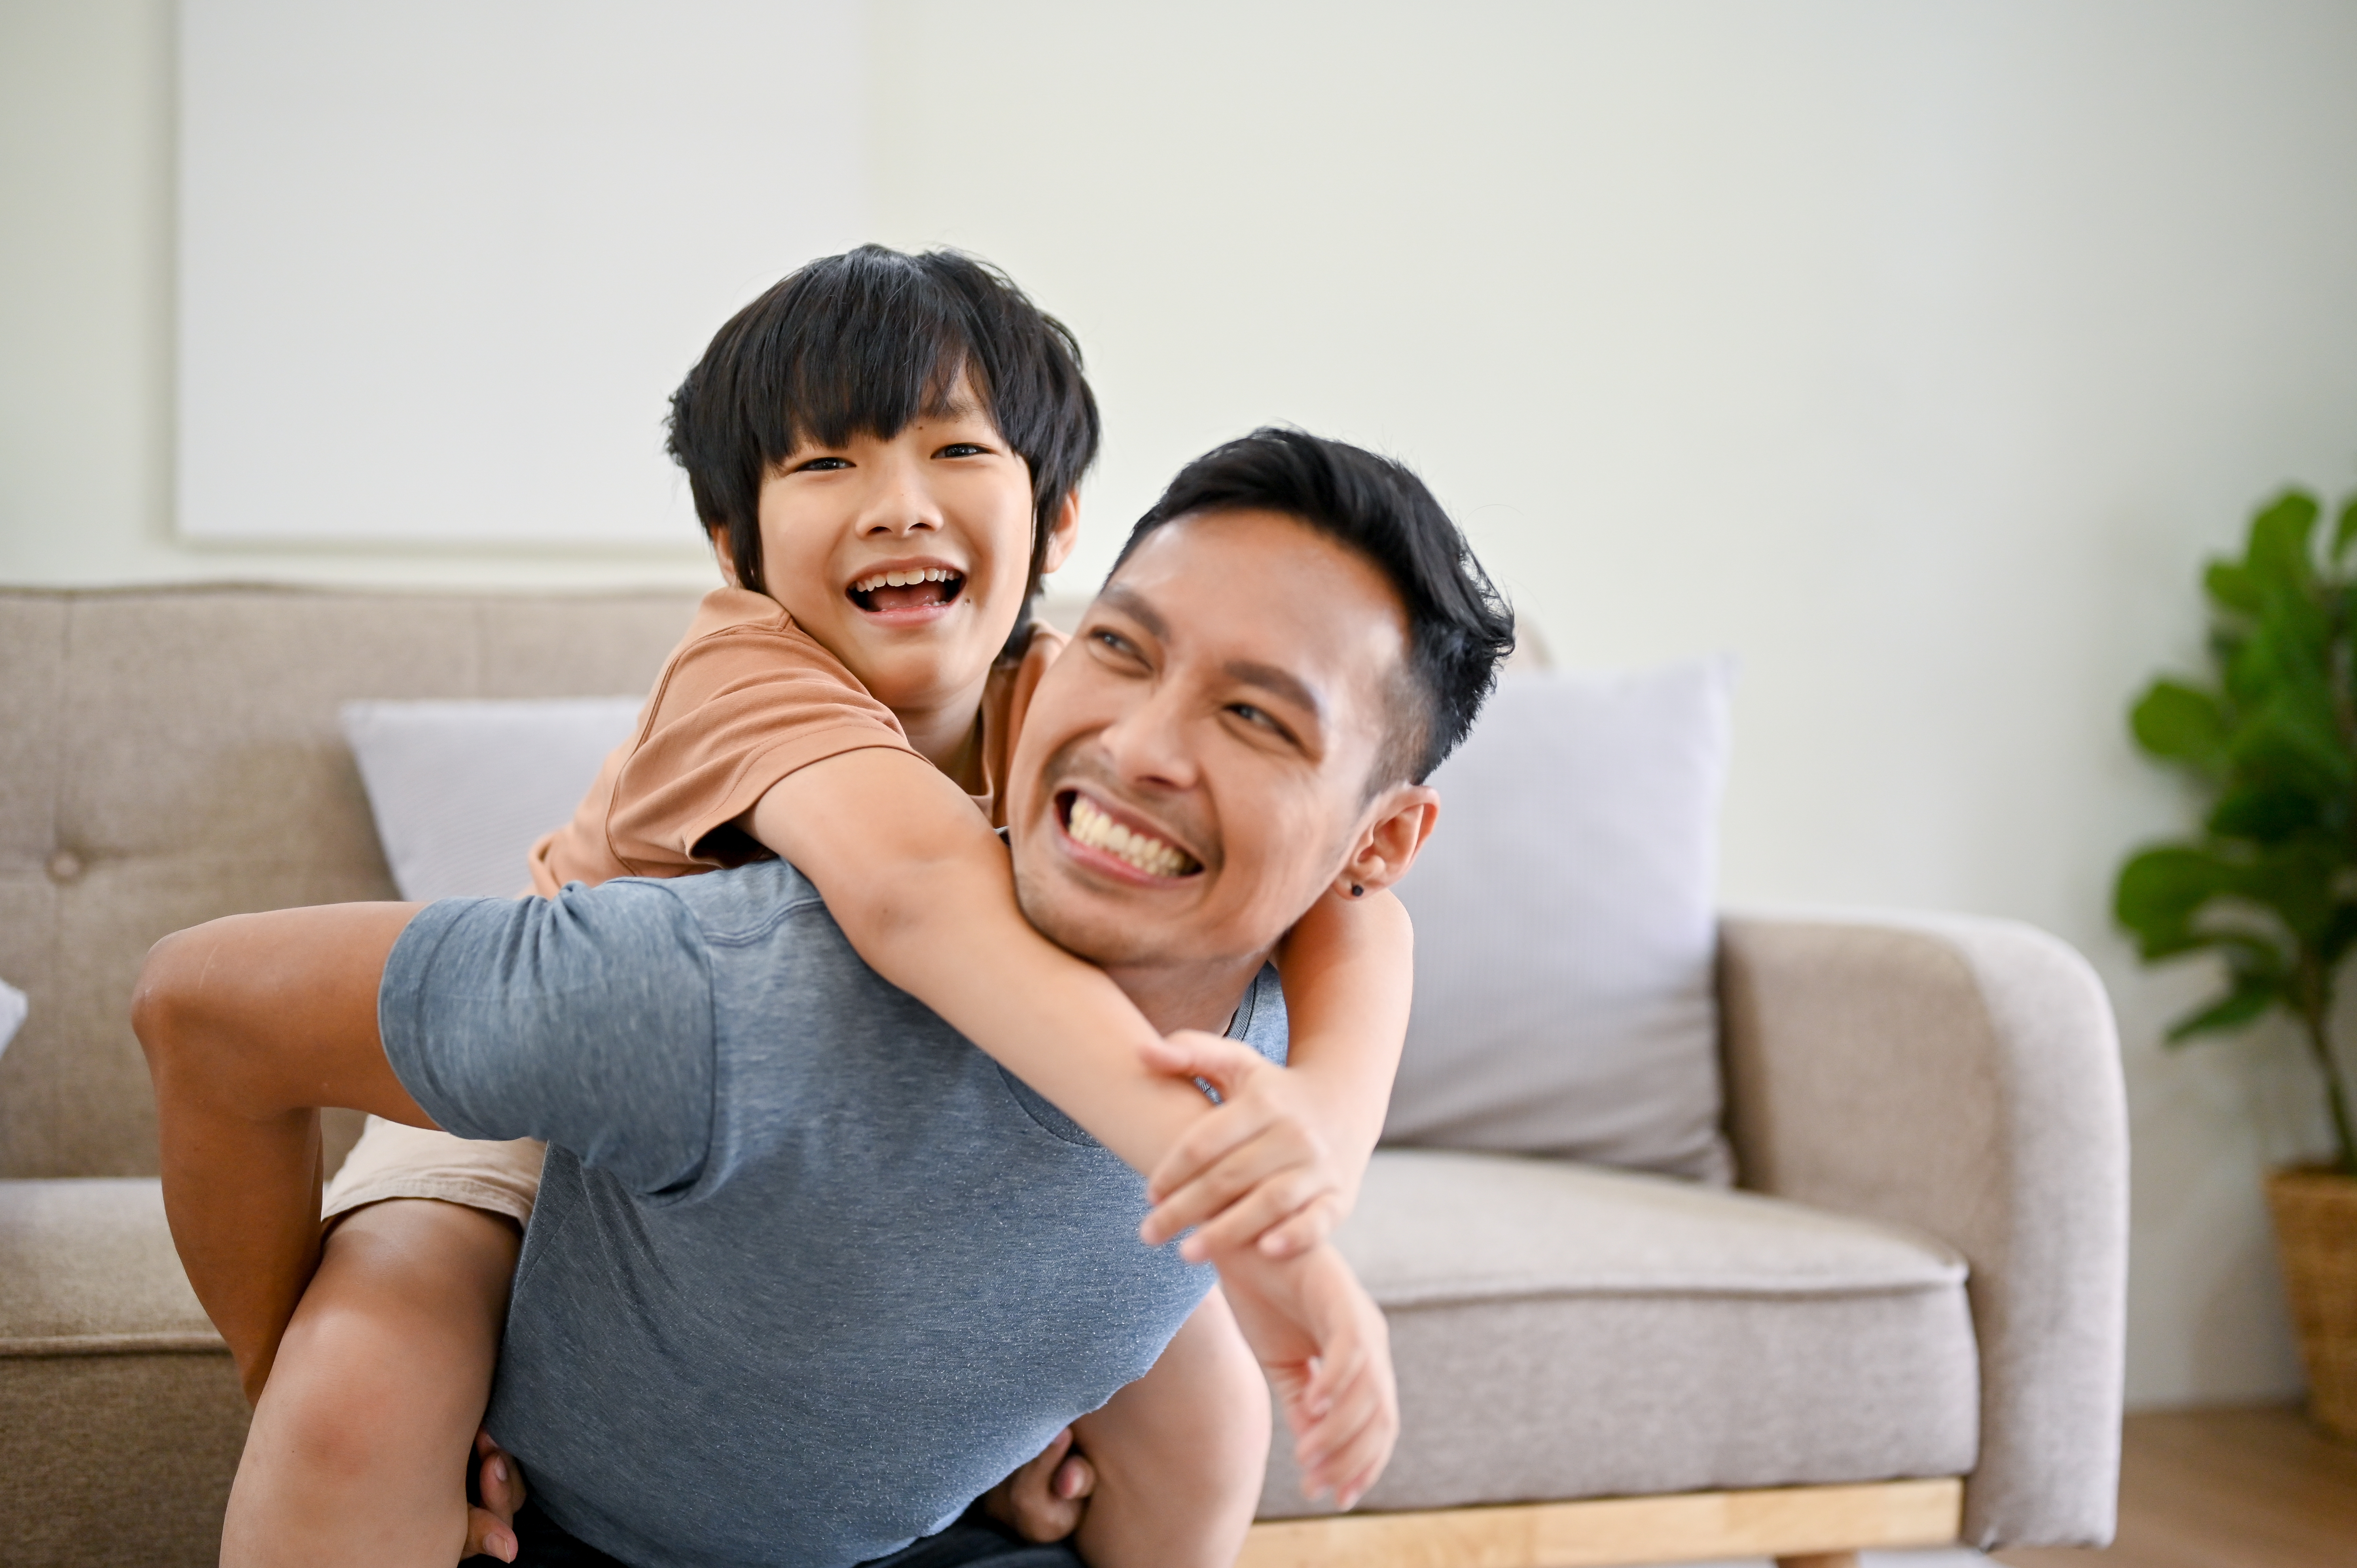 Fils asiatique sur le dos de son père, souriant | Source : Shutterstock